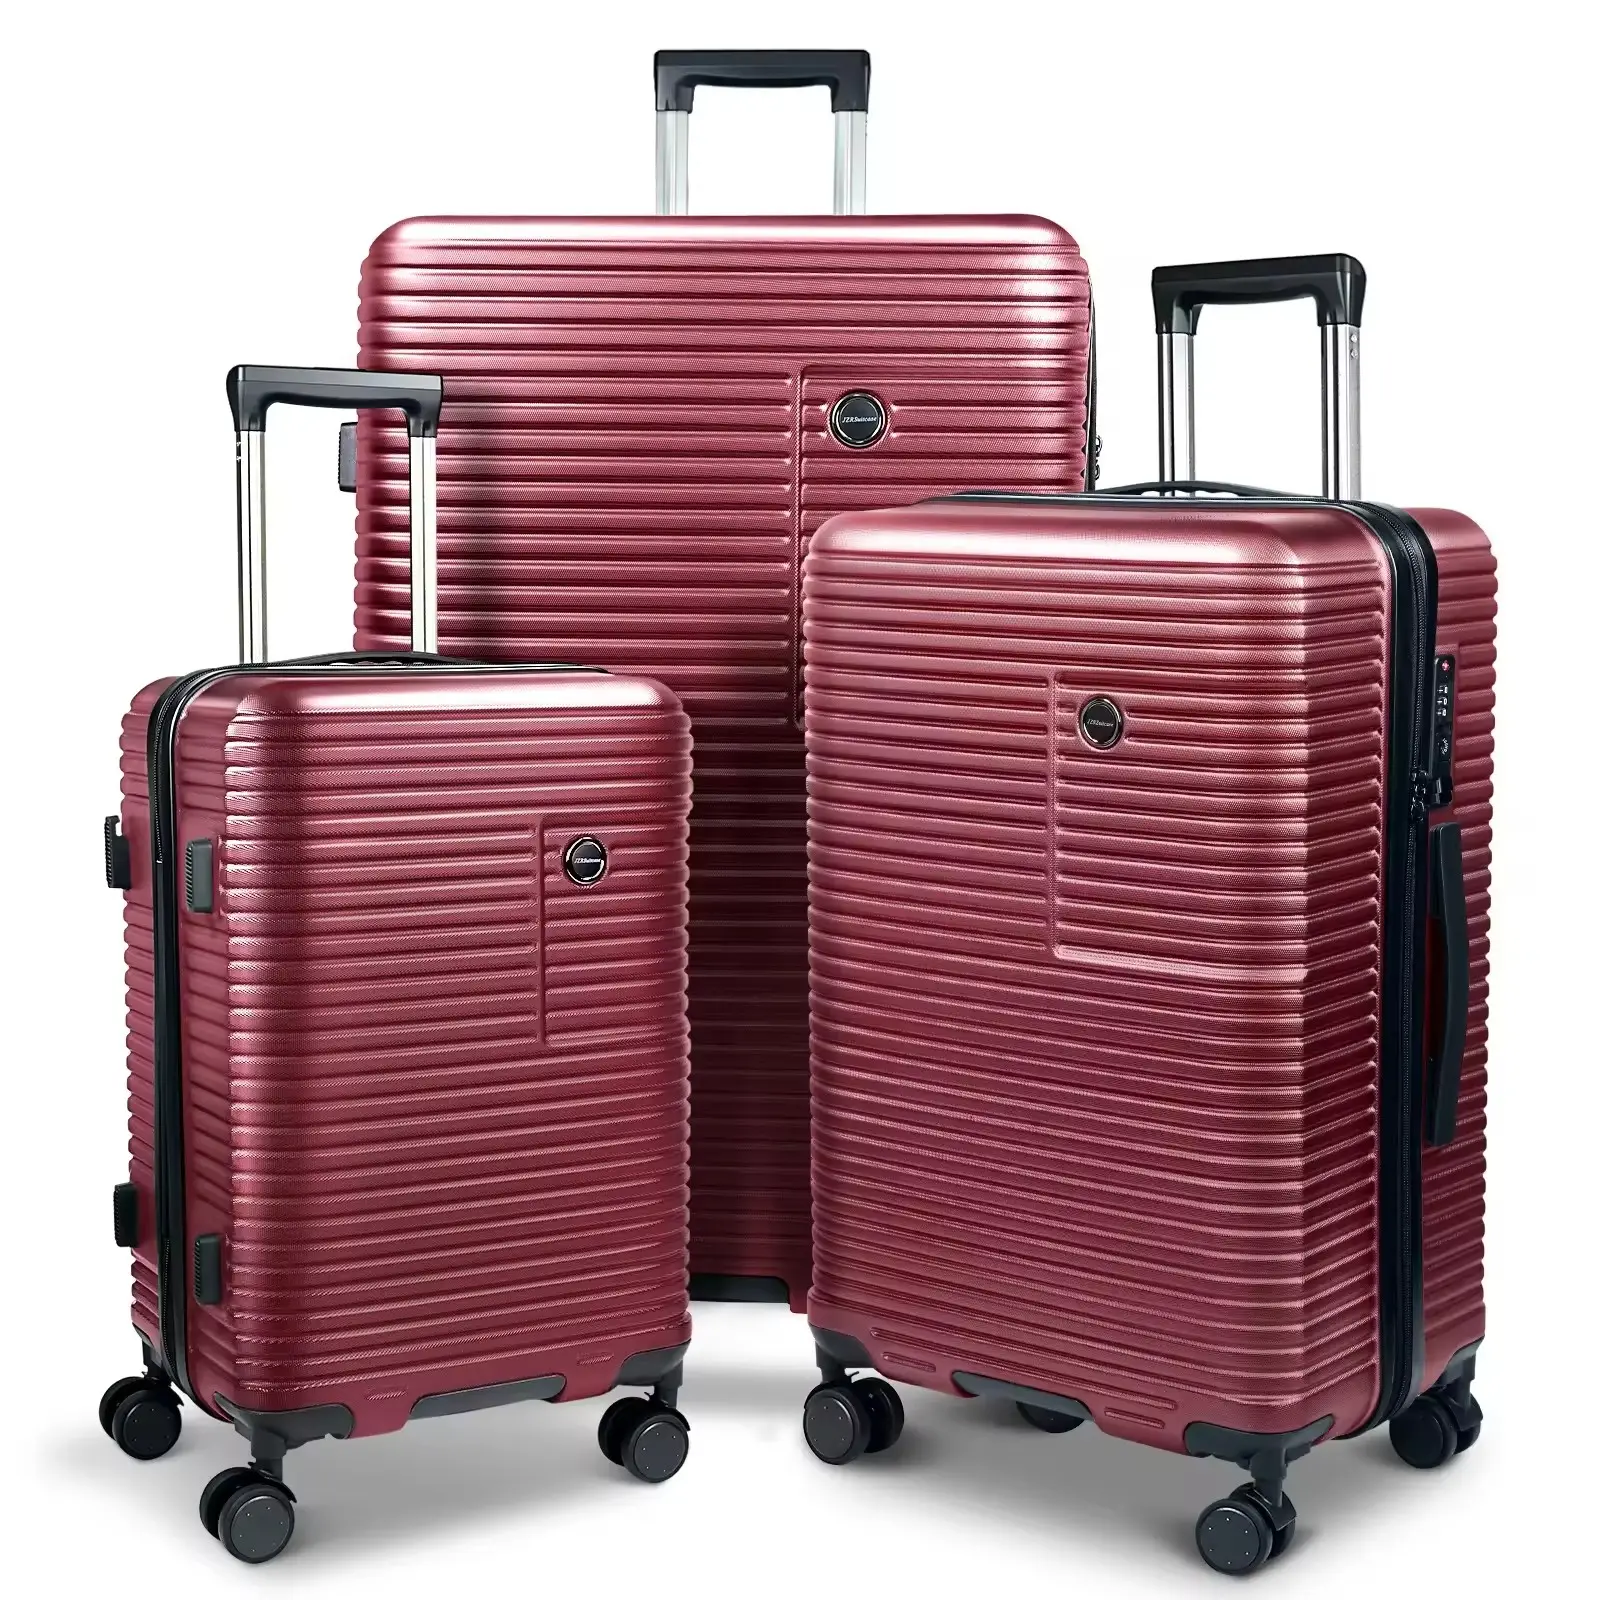 Valise de voyage personnalisée Belle moyenne à bas prix Meilleure vente Bagages enregistrés 3 pièces 20 24 28 Sets de valises